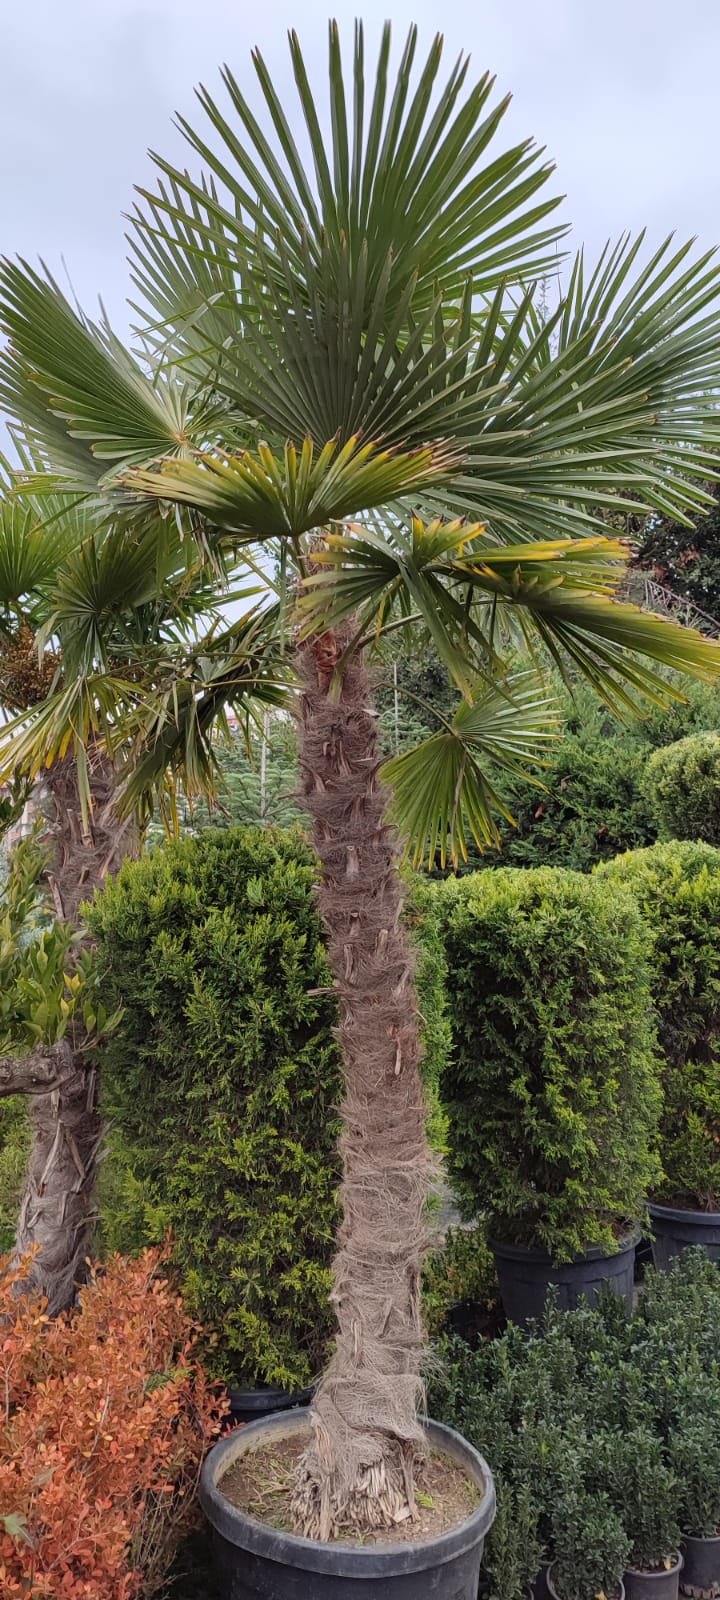 palmiye-ağaci-kiralama